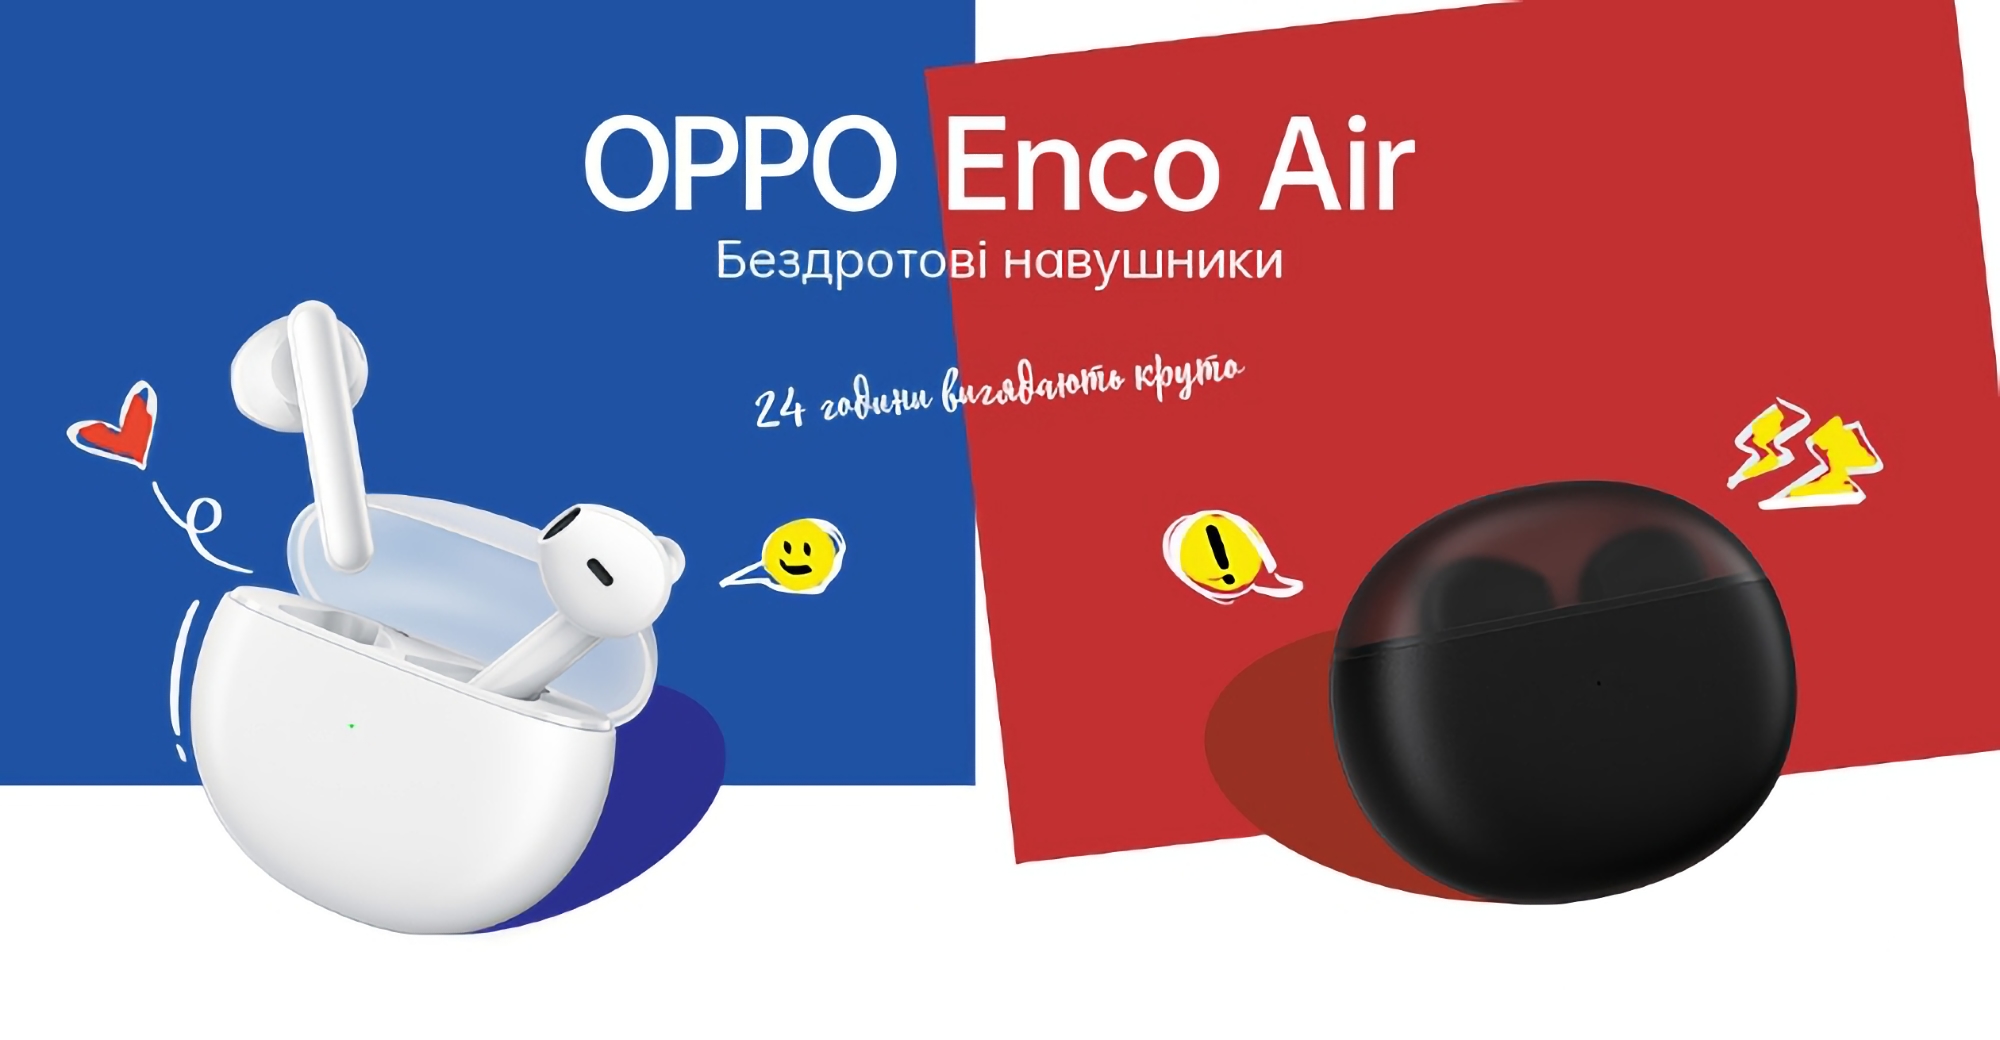 OPPO Enco Air із захистом IPX4, Bluetooth 5.2 та автономністю до 24 годин можна купити в Україні за акційною ціною